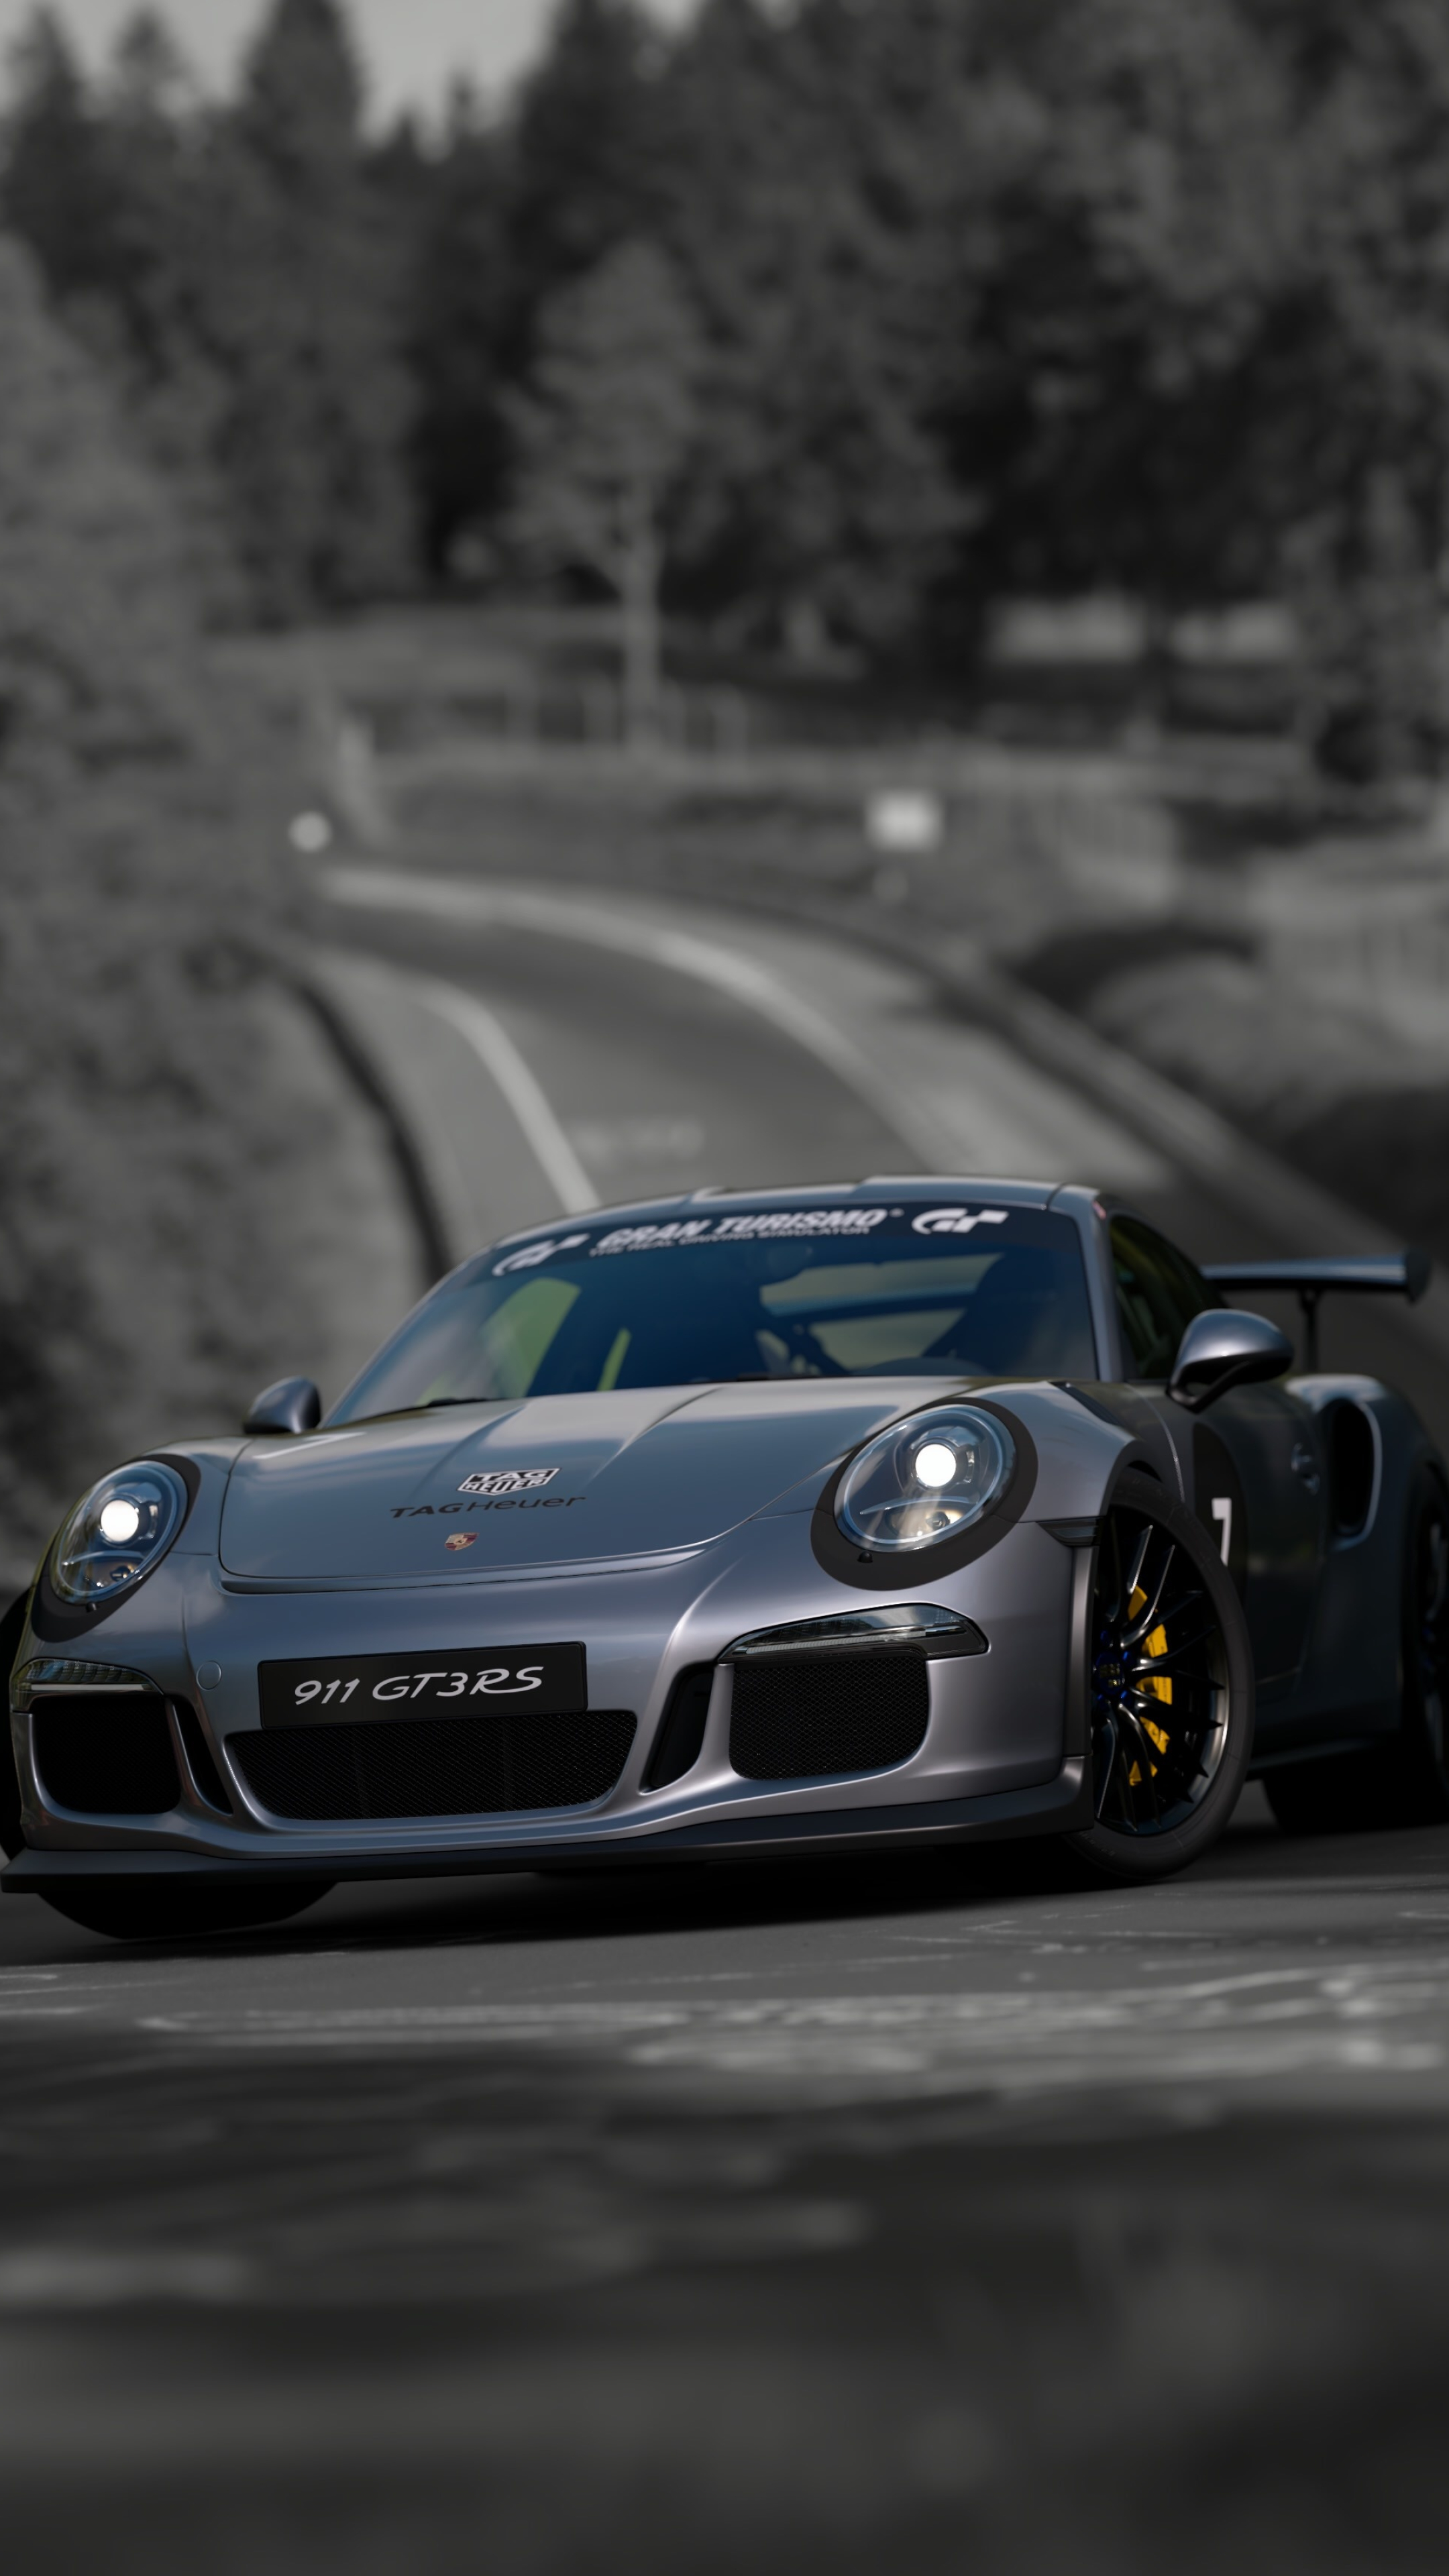 Porsche 911 GT3 RS, GT Sport edition, Stunning wallpaper, Motorsport inspiration, 2160x3840 4K Phone